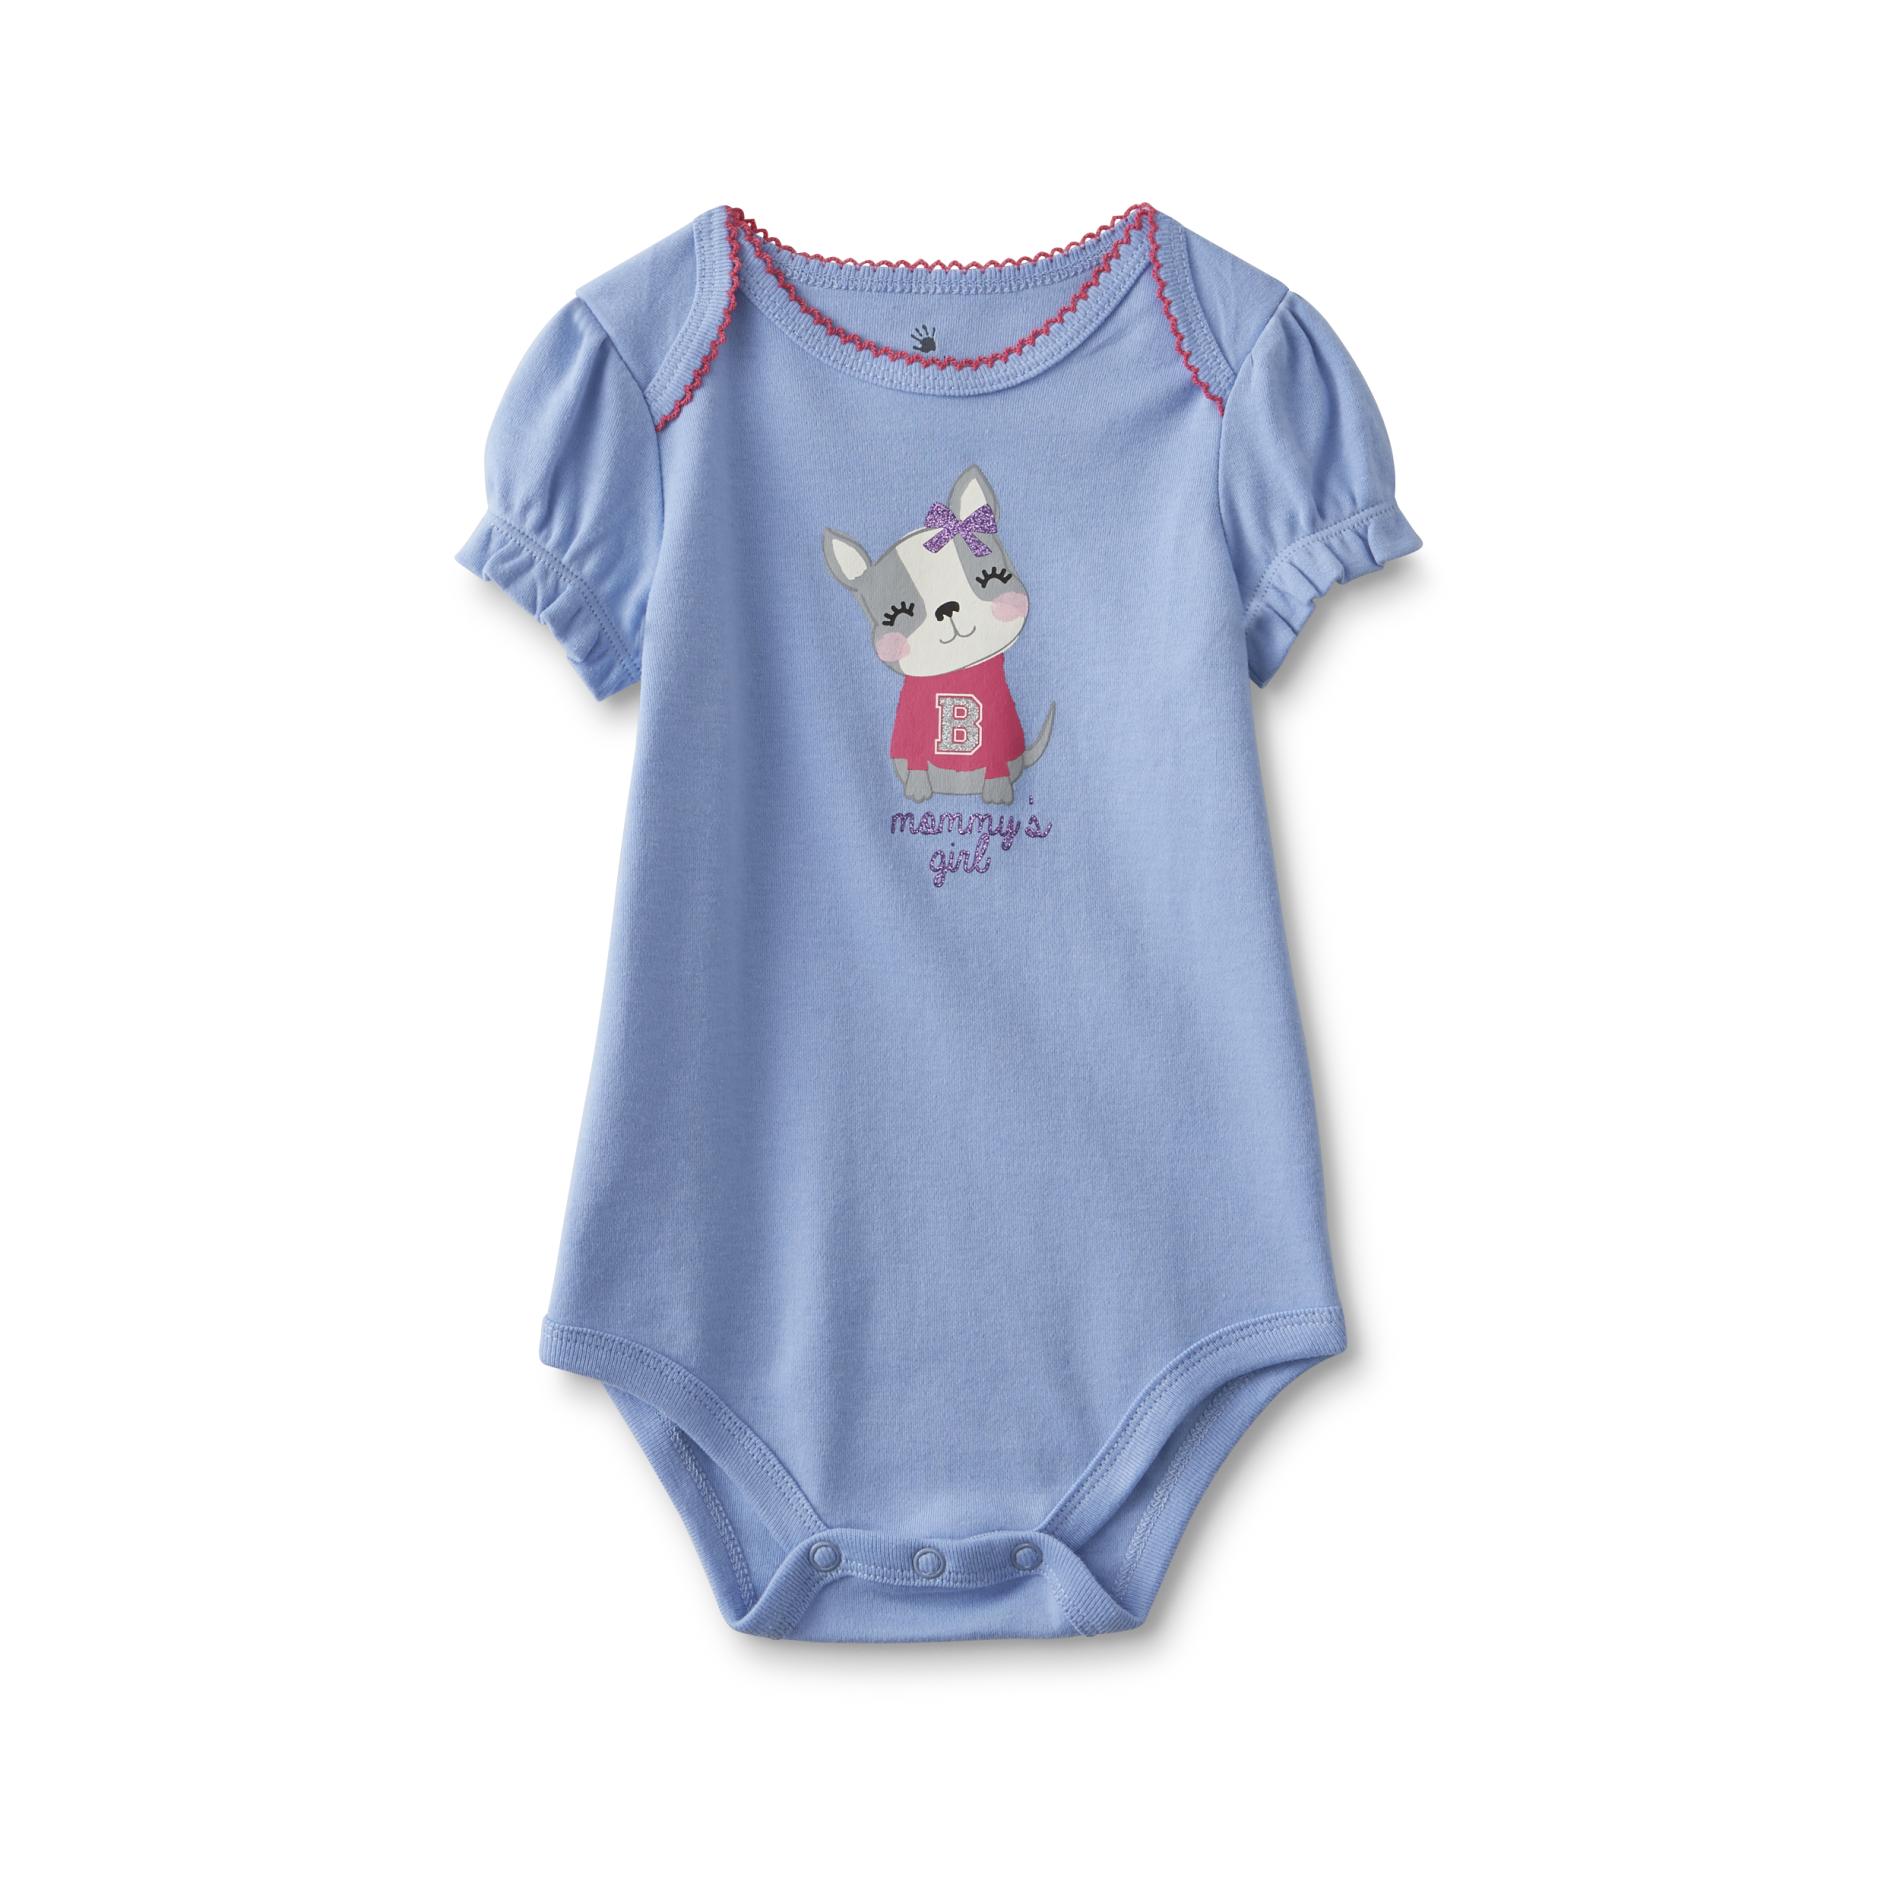 Small Wonders Newborn & Infant Girl's Short-Sleeve Bodysuit - Mommy's Girl